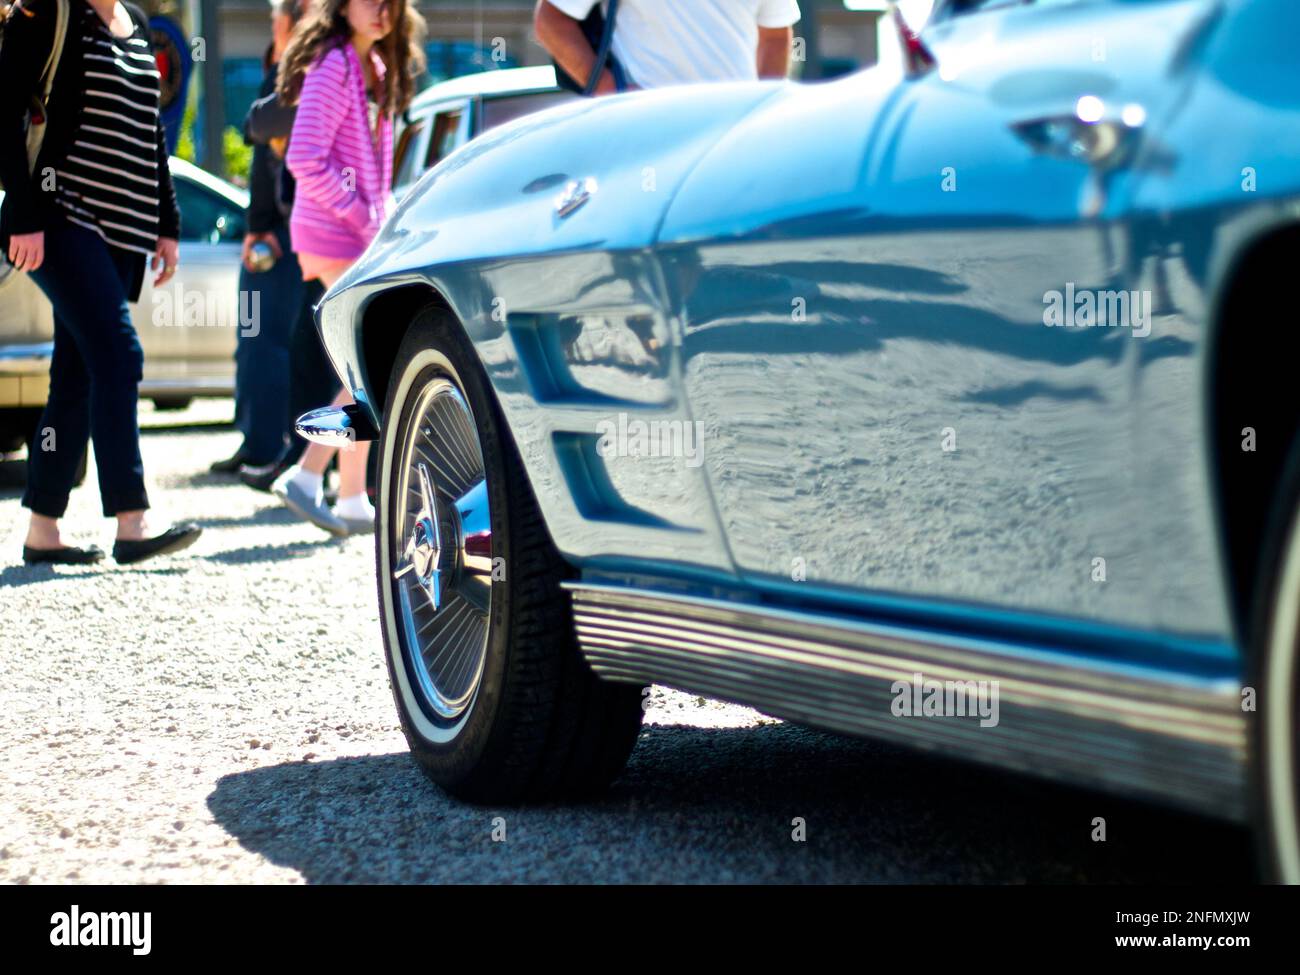 Corvette Stingray de Chevrolet photo de côté avec la foule en arrière-plan Banque D'Images